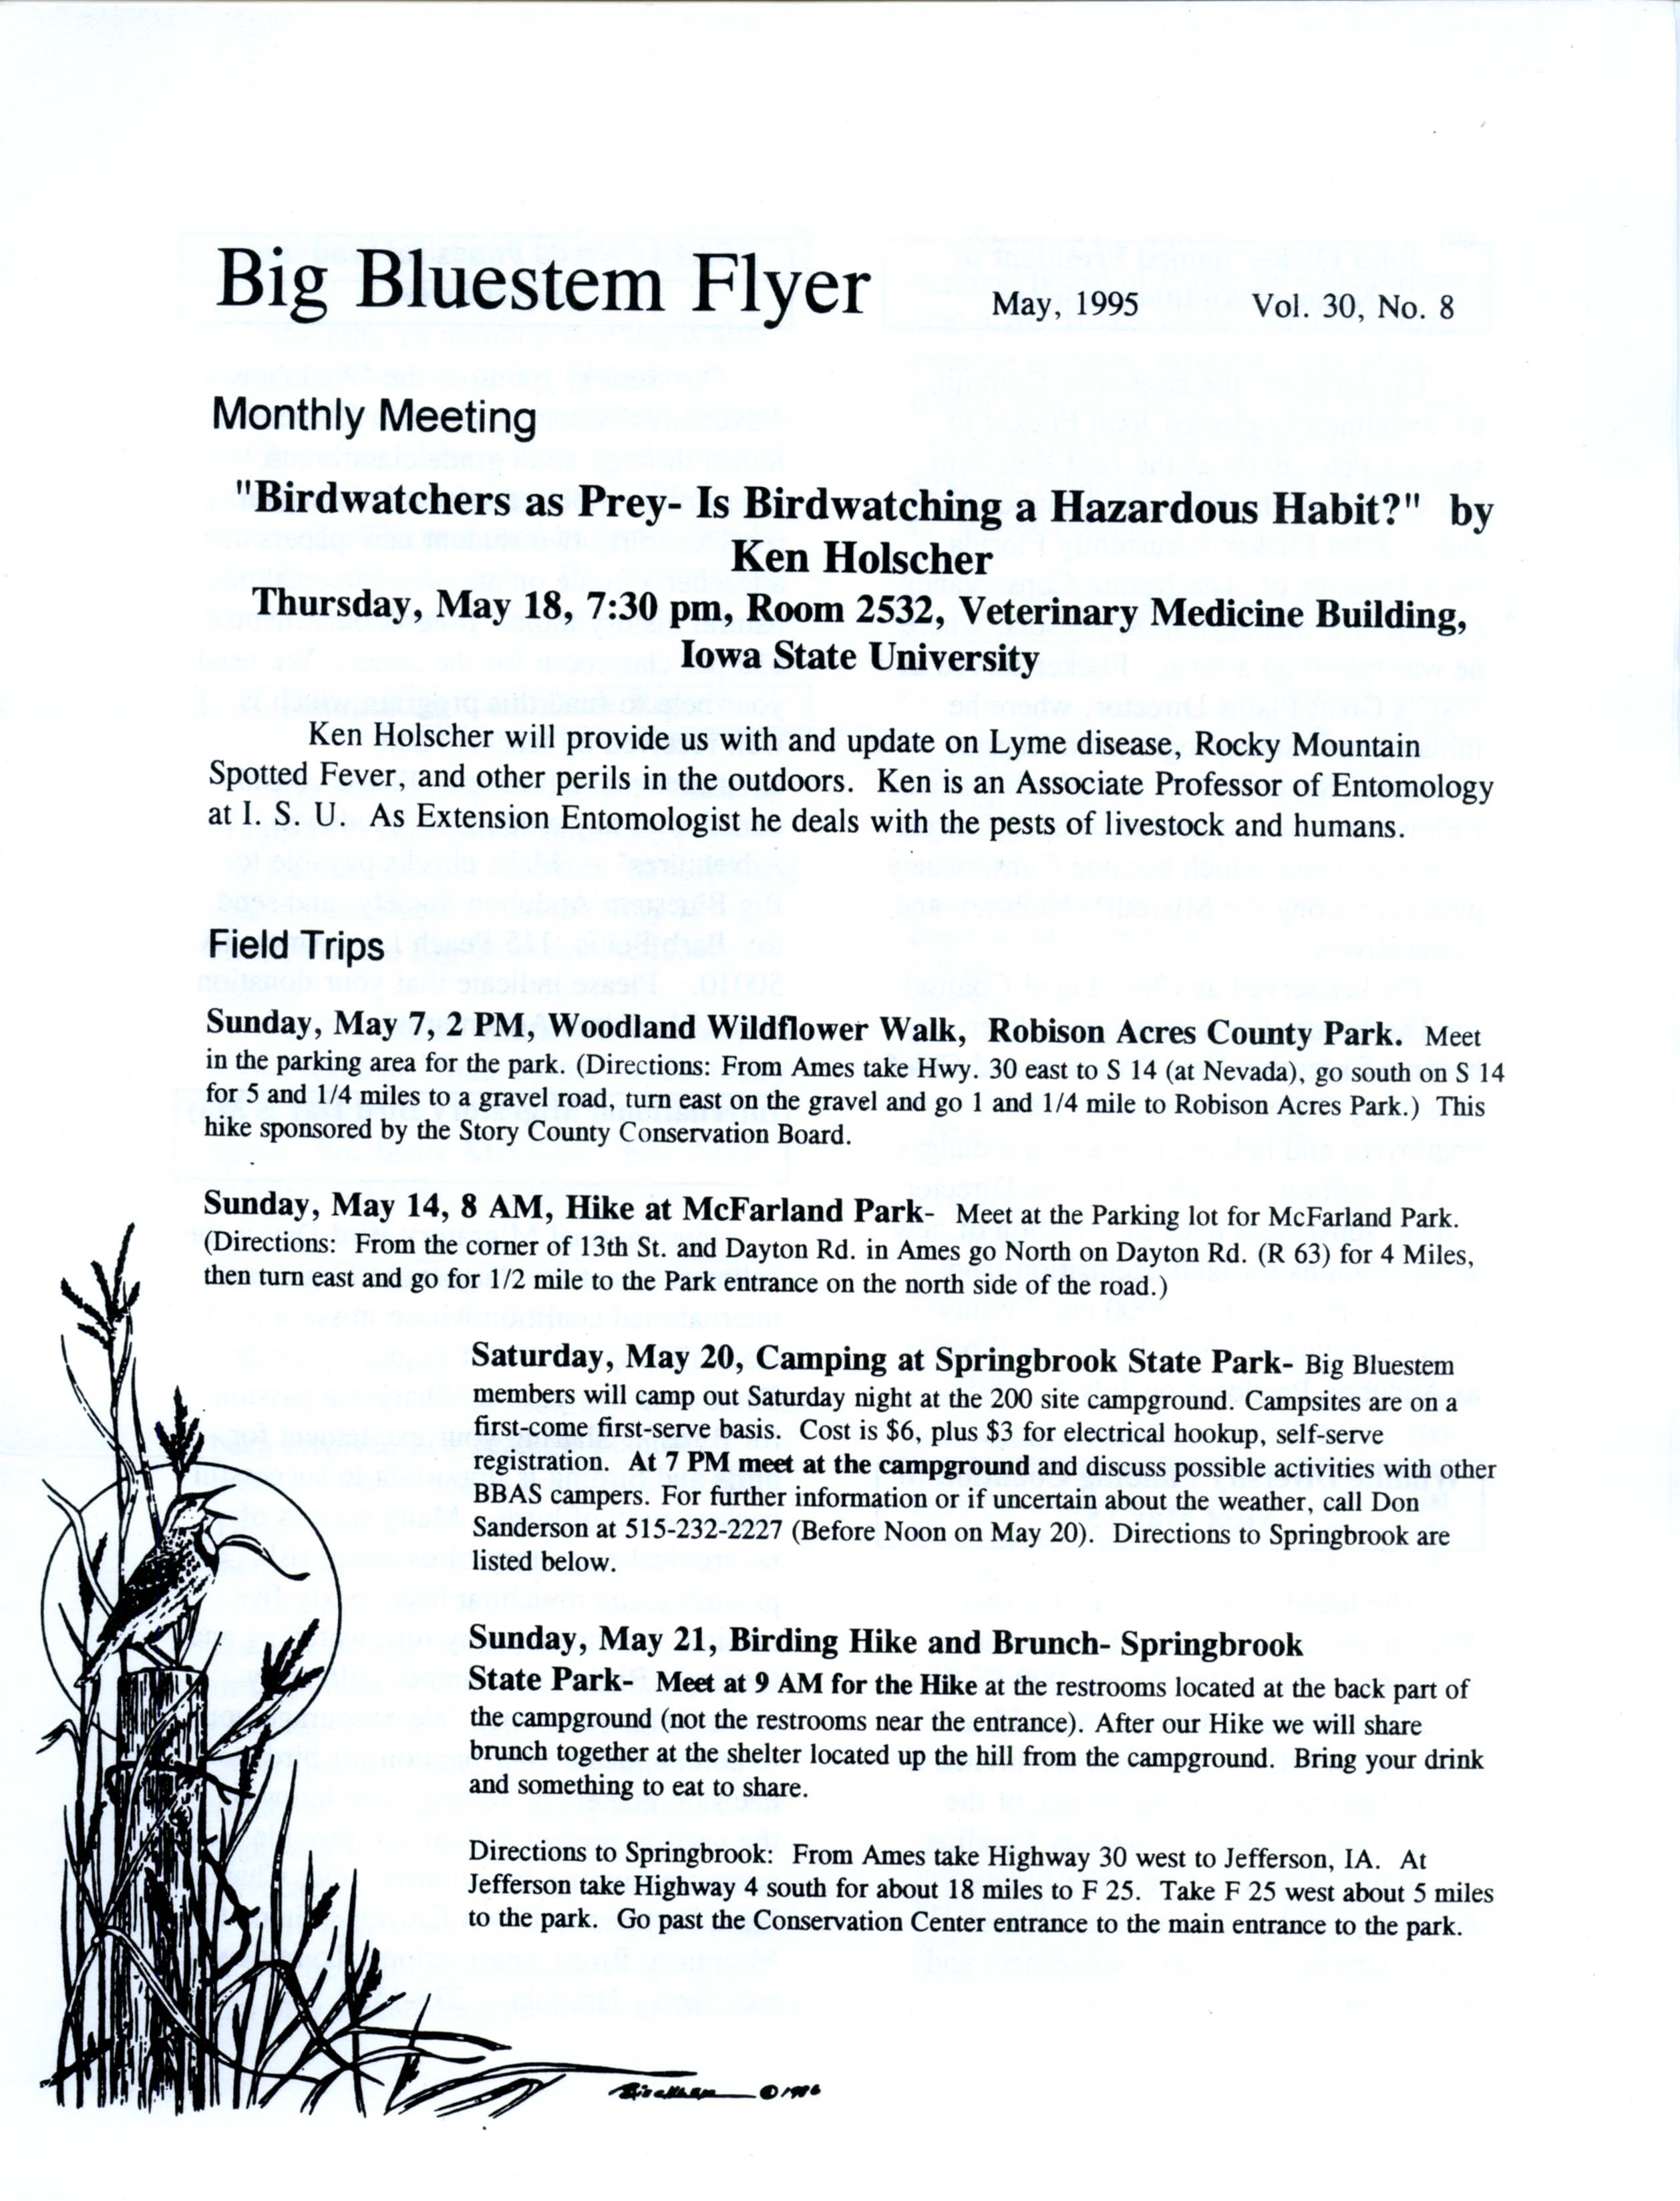 Big Bluestem Flyer, Volume 30, Number 8, May 1995